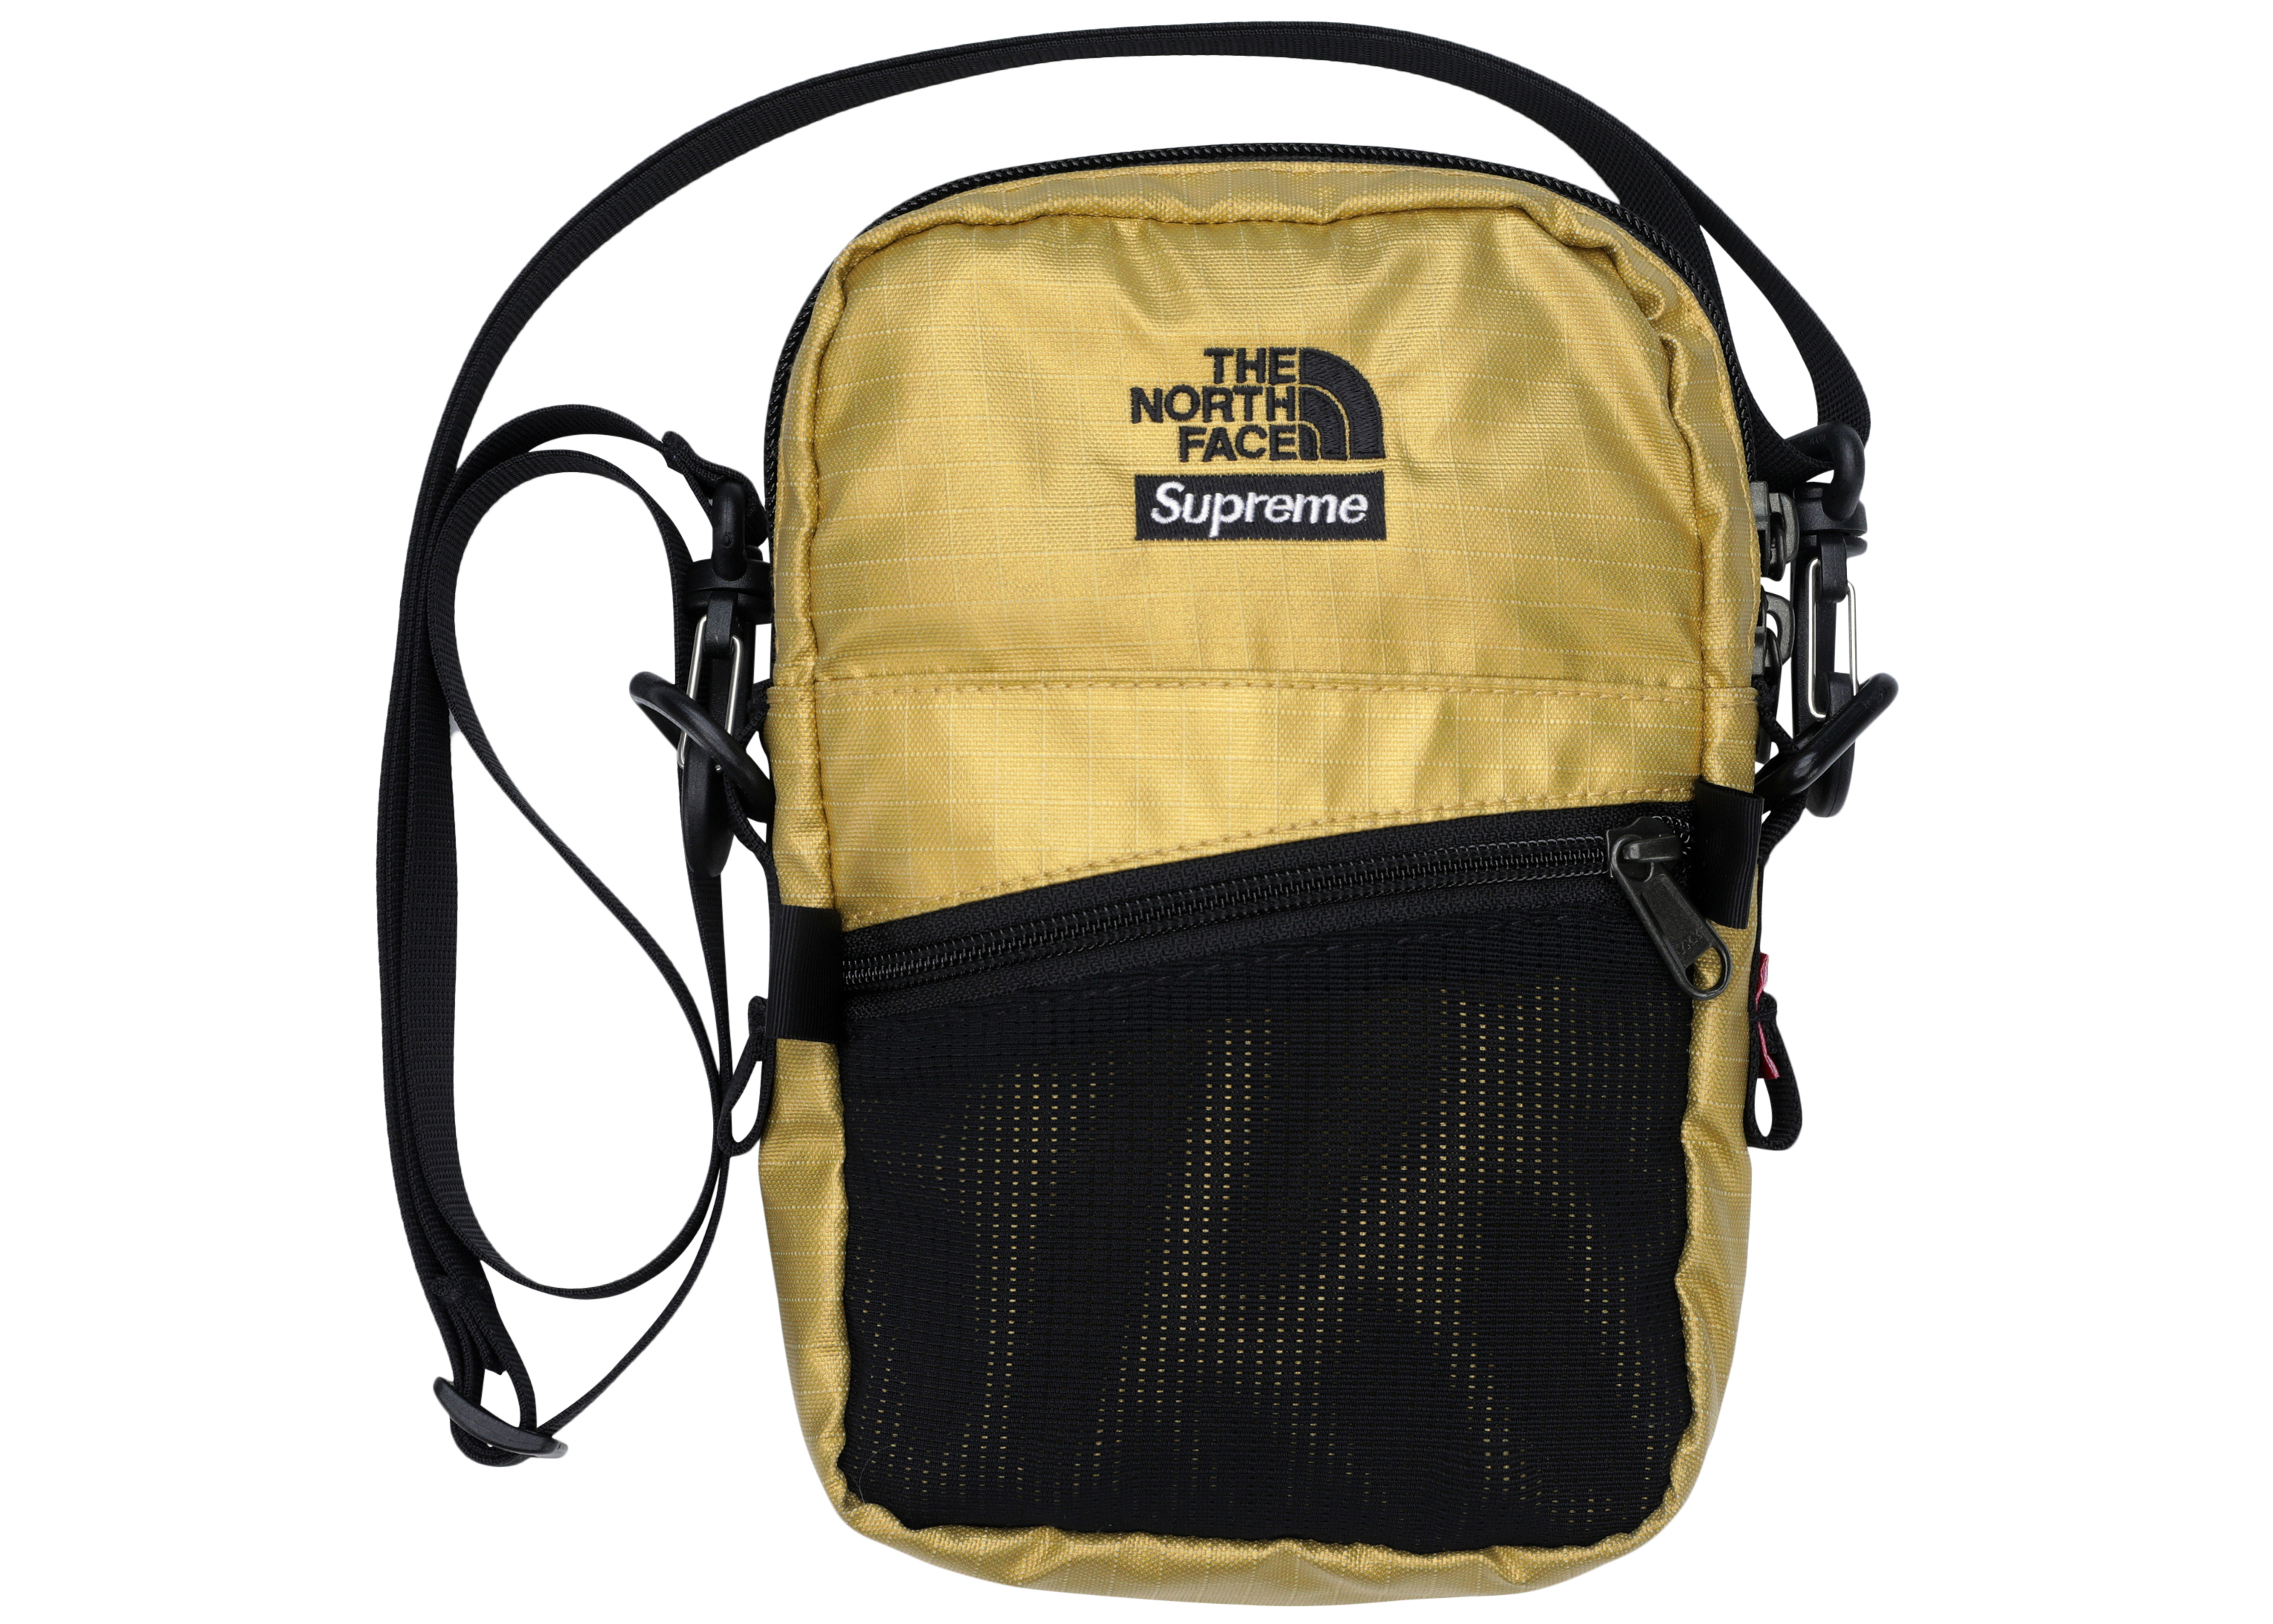 North Face Supreme Shoulder Bag Sale, SAVE 60% - aveclumiere.com